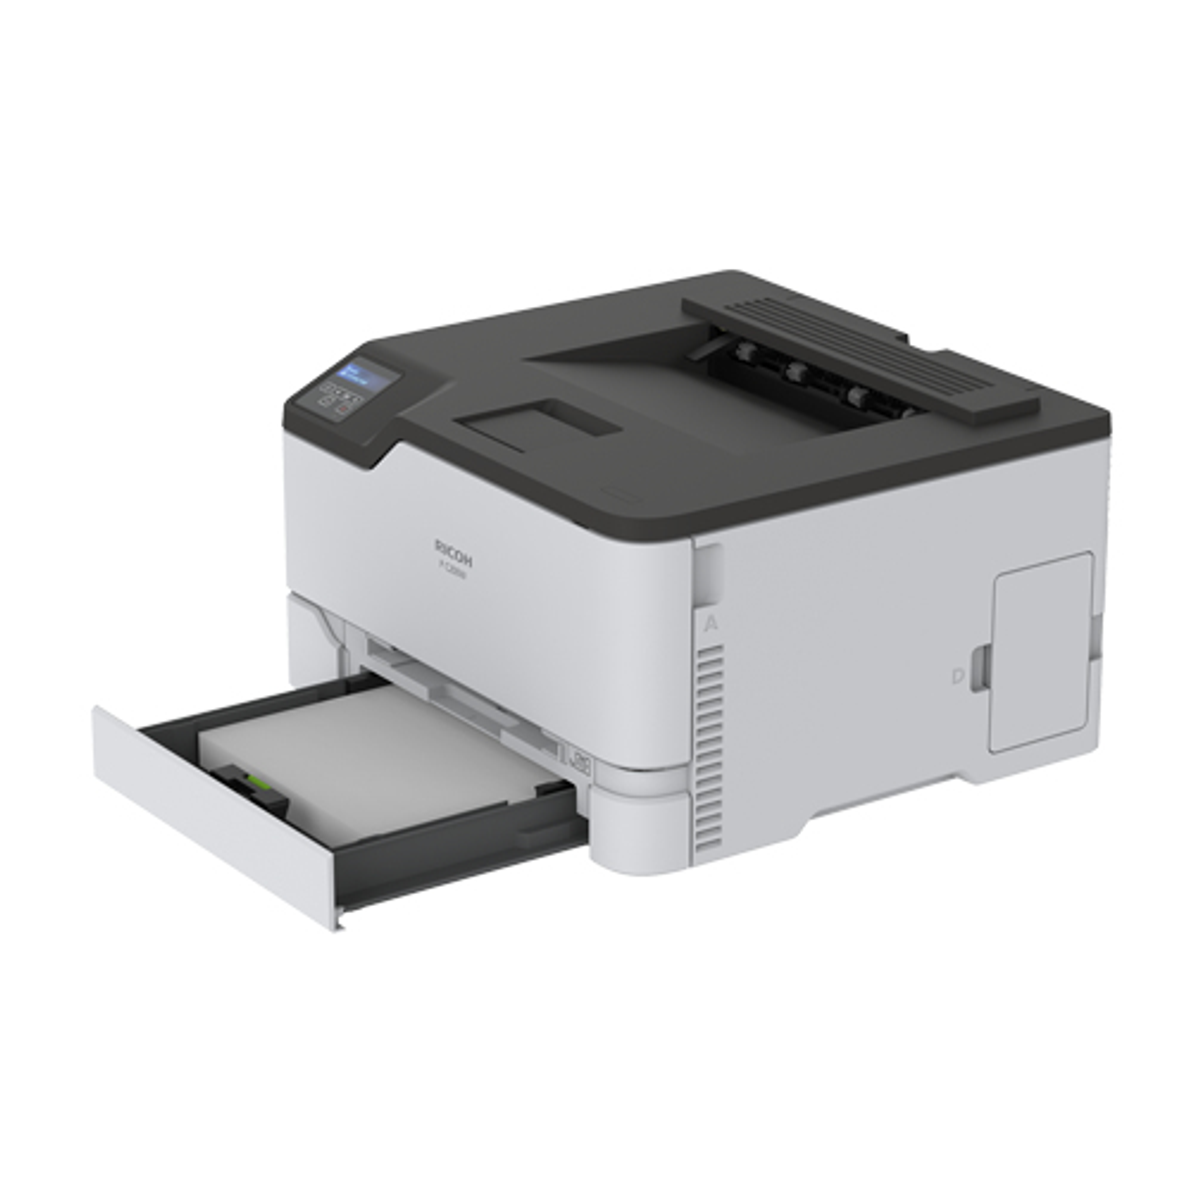 RICOH P elektrofotografischer WLAN Druck Laserdrucker C200W Laserstrahlscannen, Netzwerkfähig